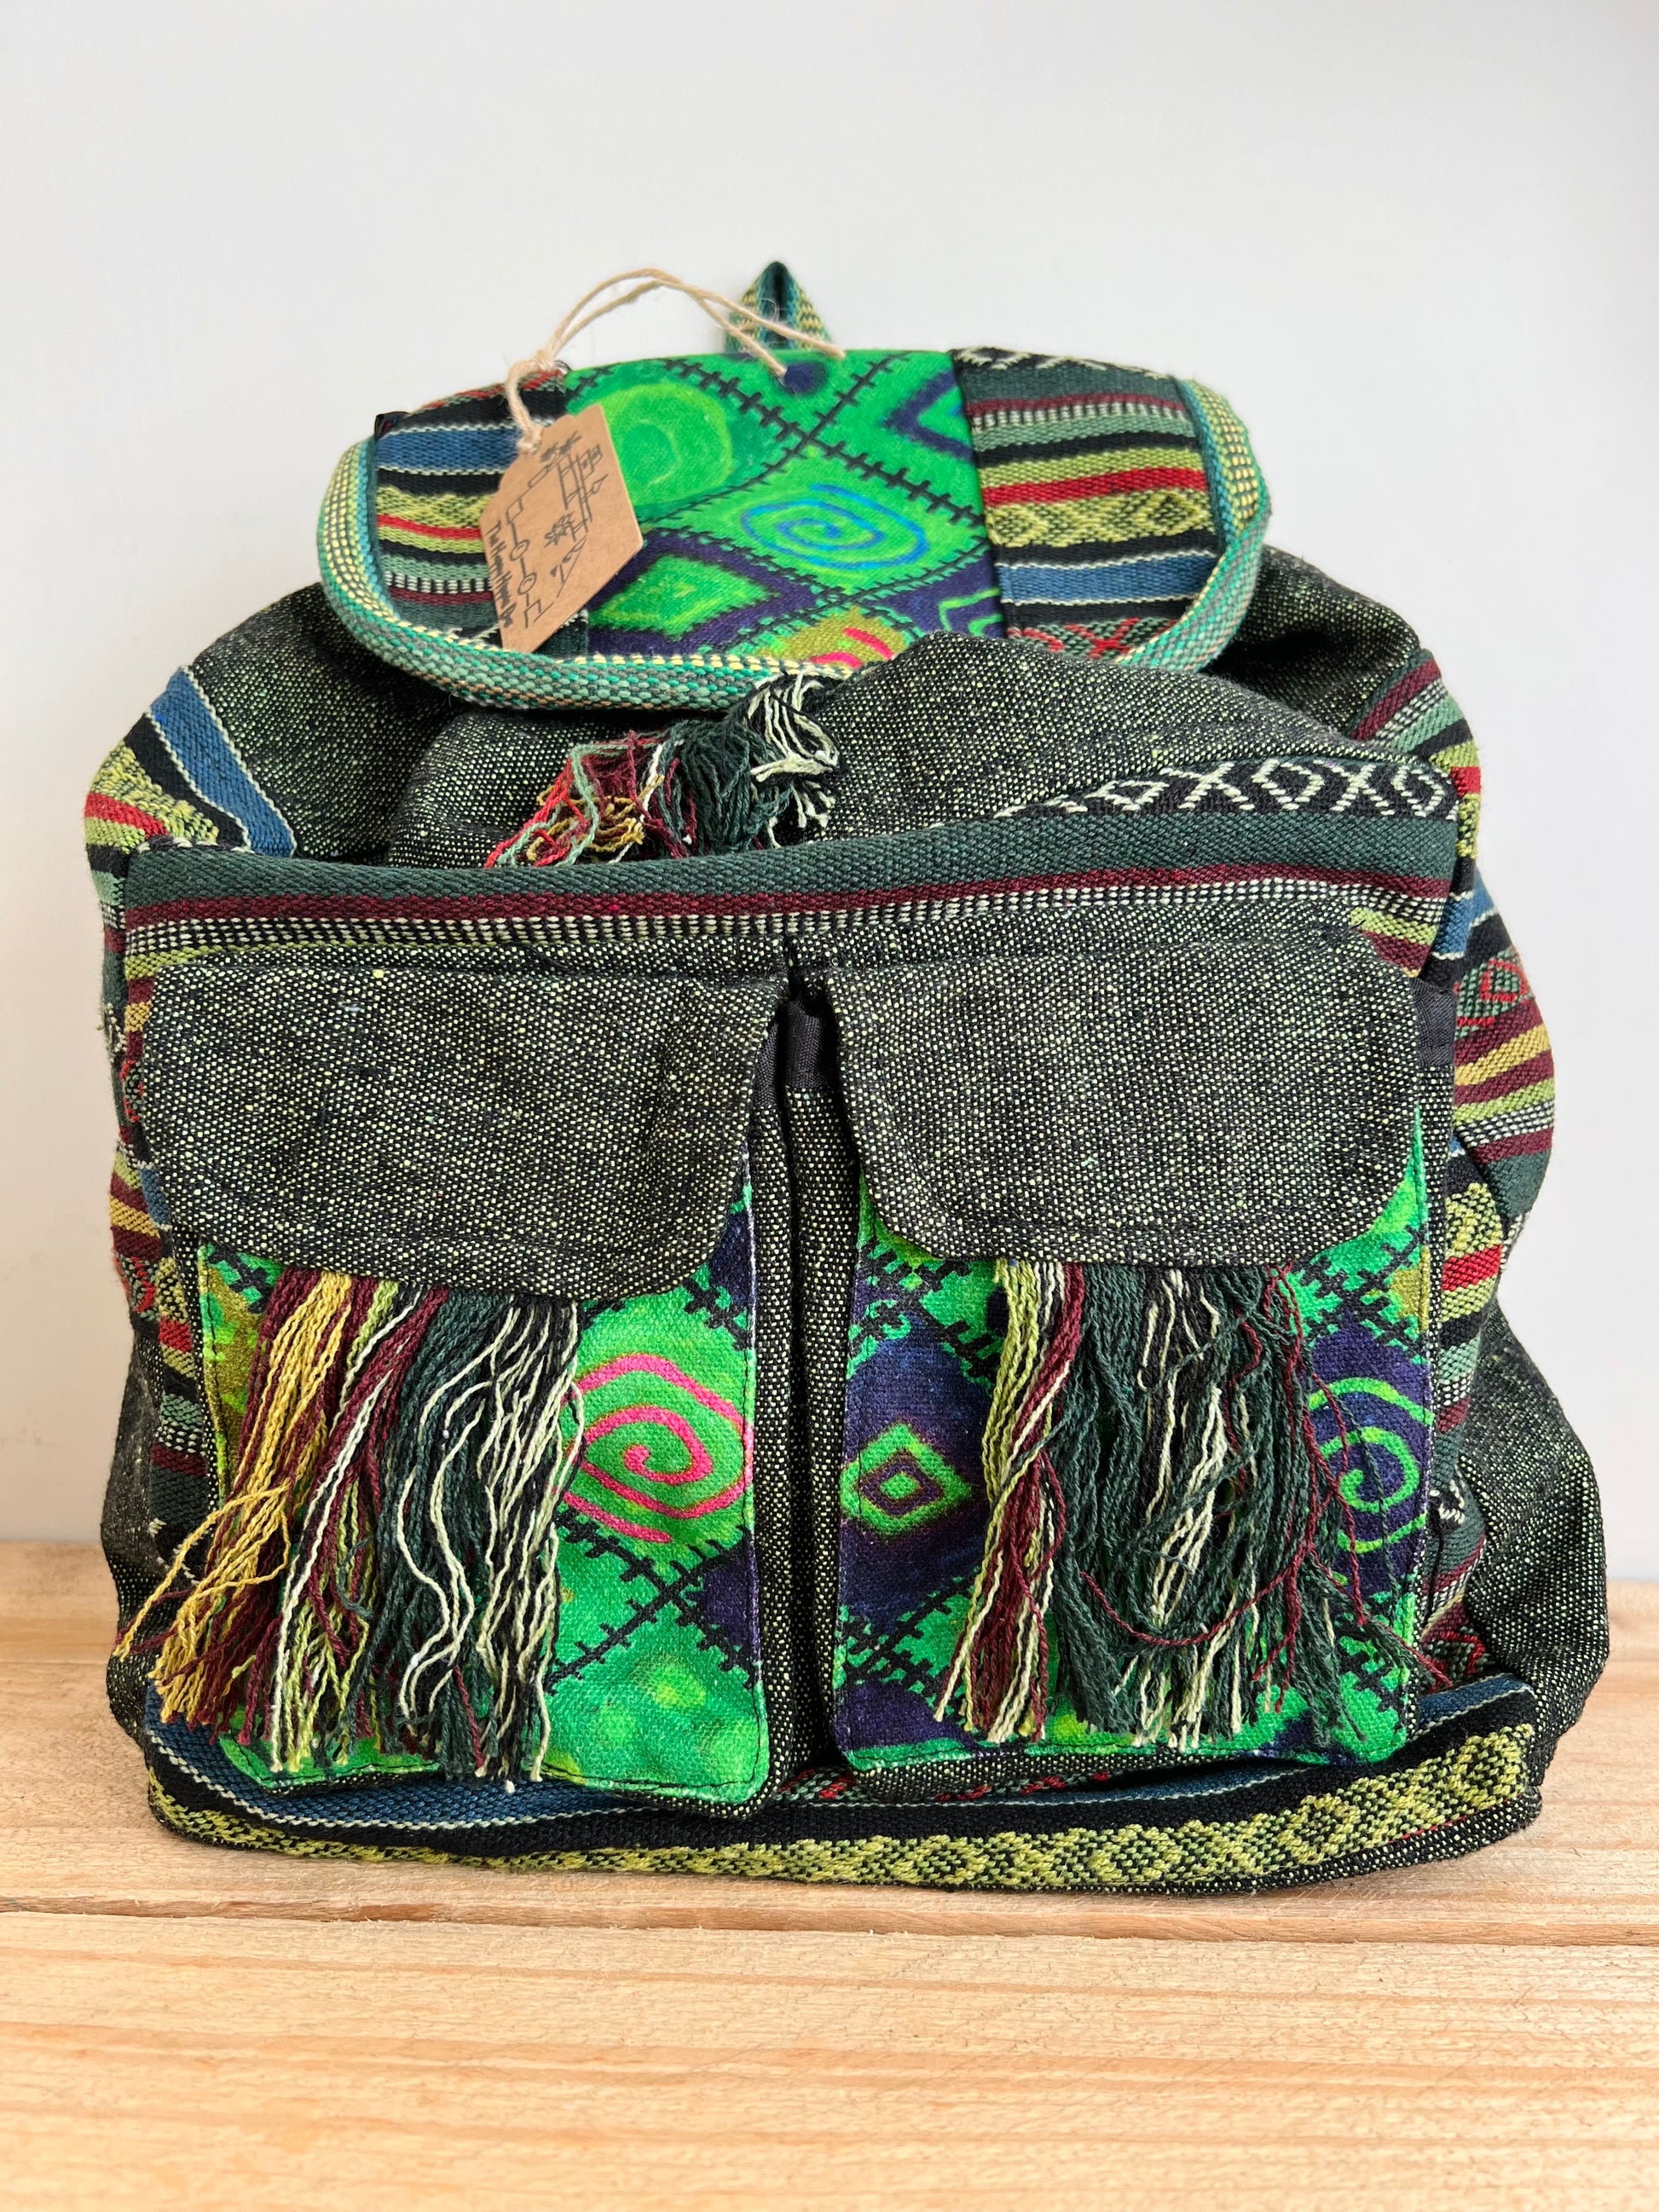 Handmade Fair Trade Patchwork Hippie Bohemian Backpack Green 